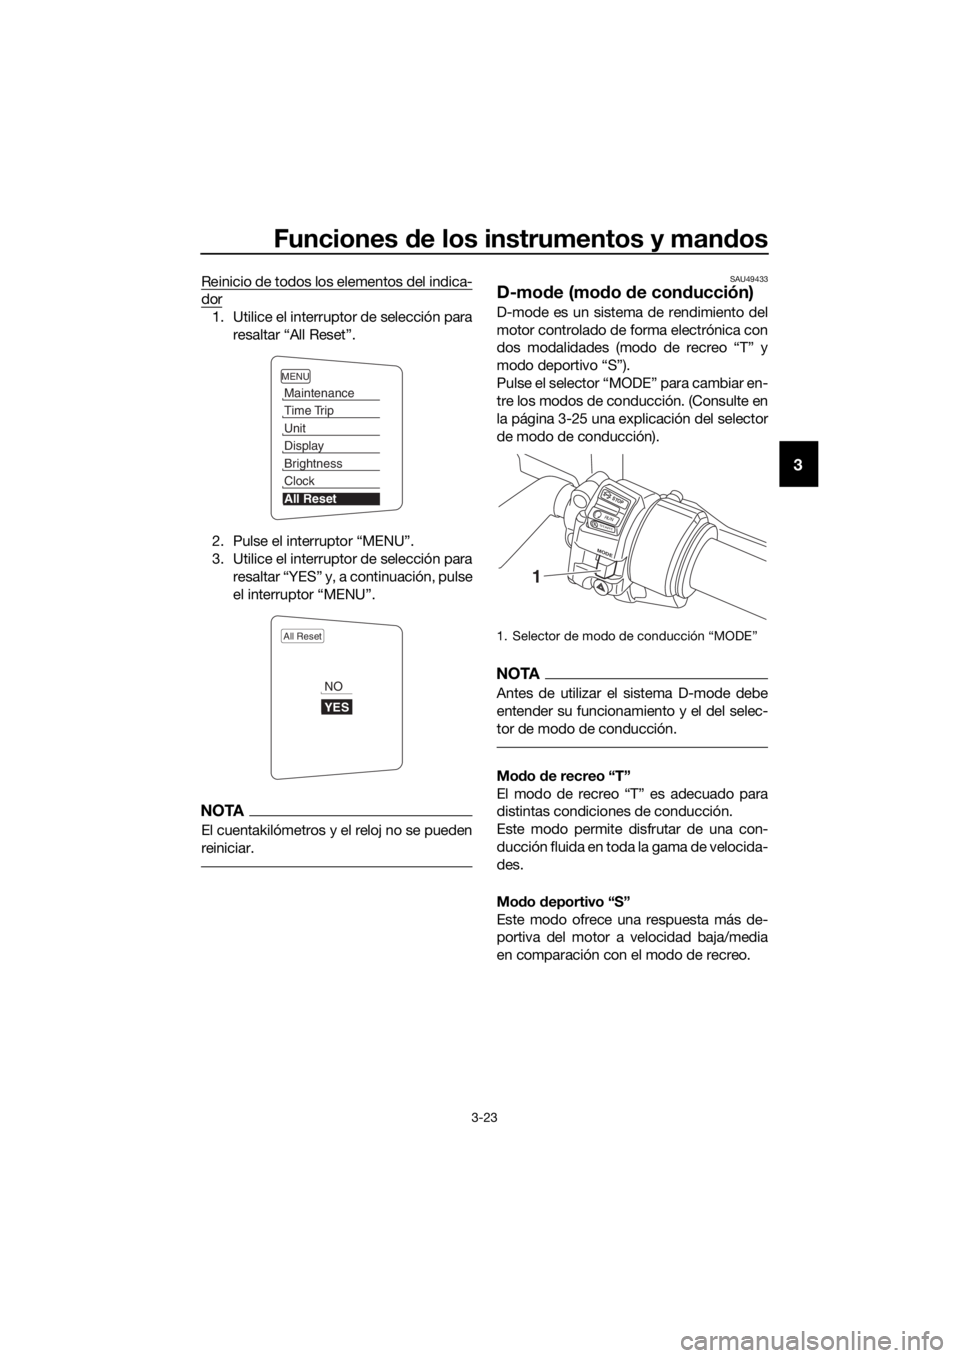 YAMAHA FJR1300AS 2018  Manuale de Empleo (in Spanish) Funciones de los instrumentos y man dos
3-23
3
Reinicio de todos los elementos del indica-
dor
1. Utilice el interruptor de selección para
resaltar “All Reset”.
2. Pulse el interruptor “MENU”